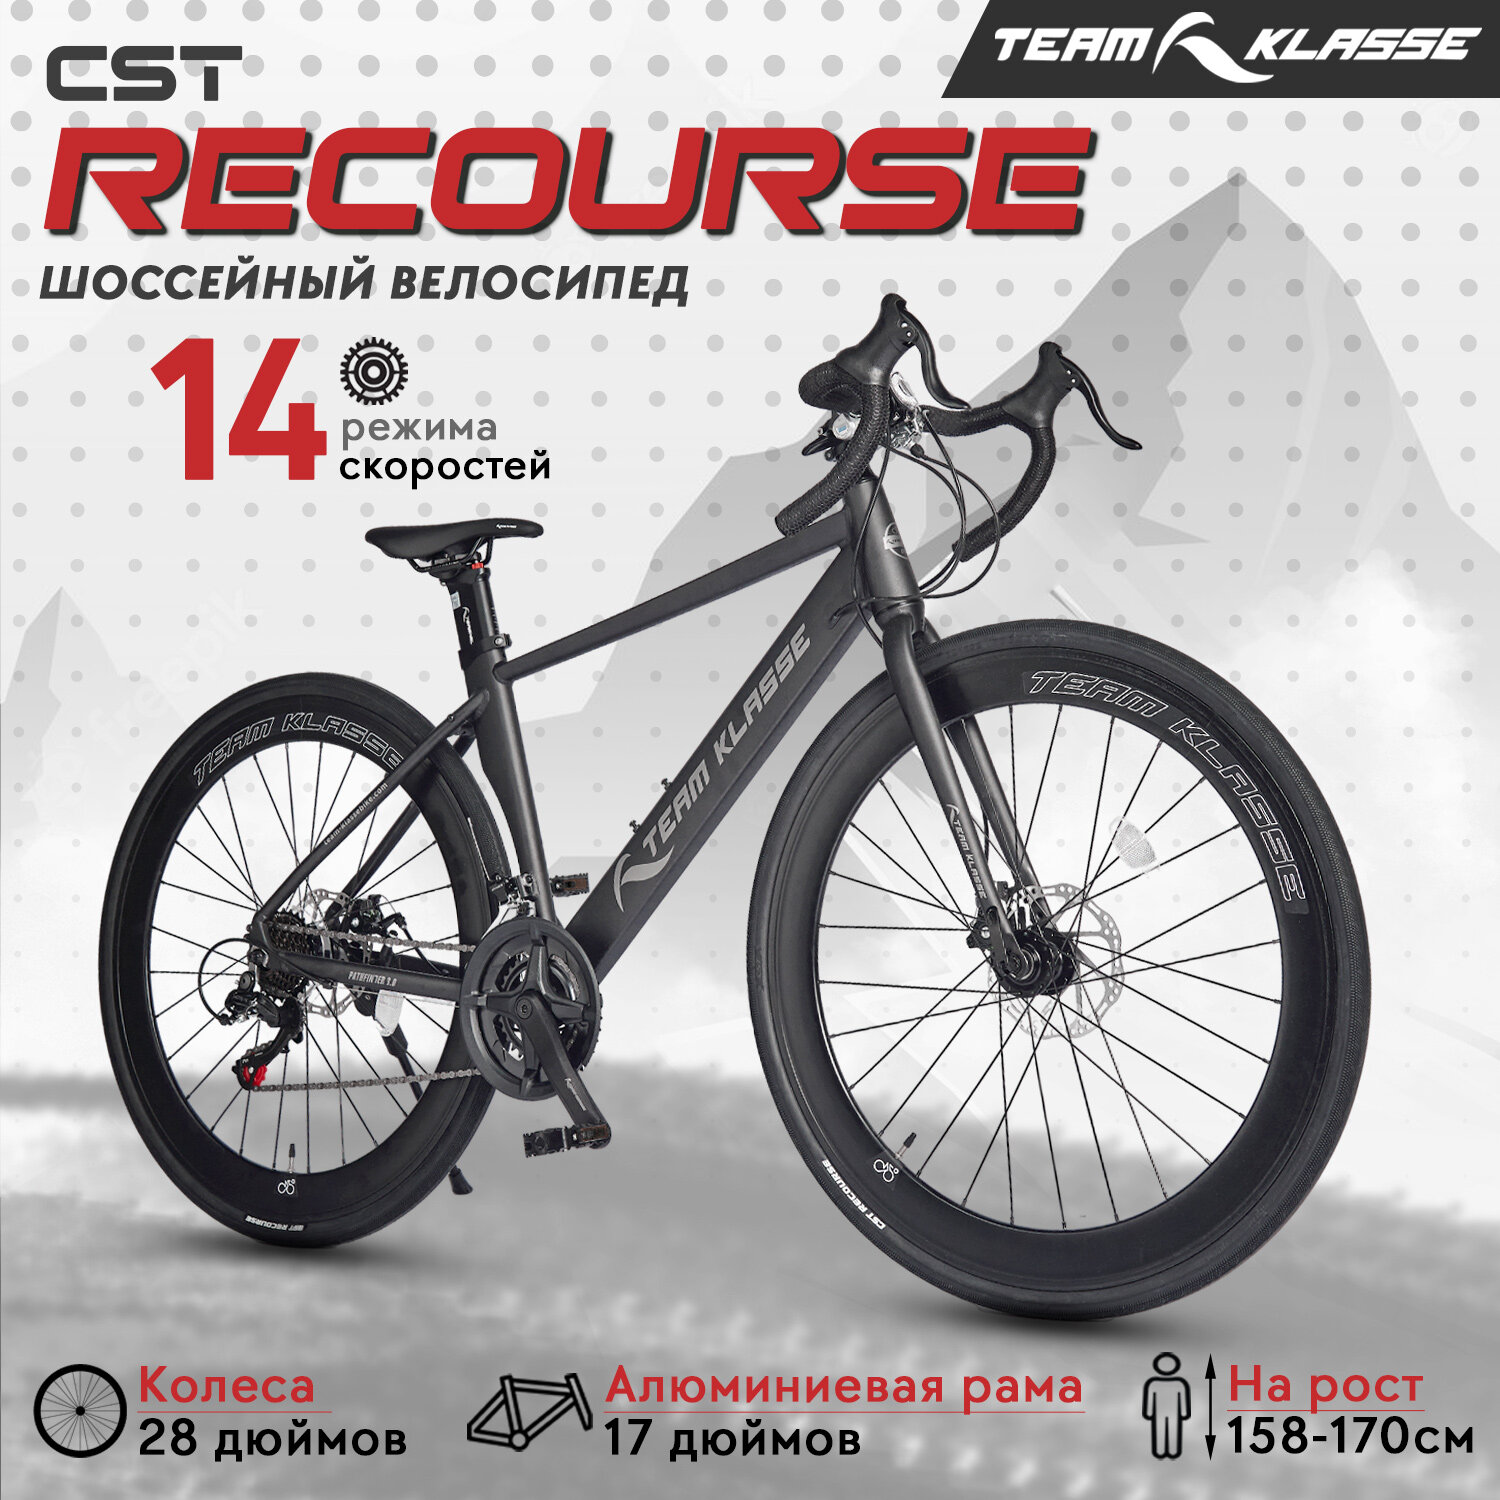 Шоссейный велосипед Team Klasse A-1-A, бело-серый, 28"